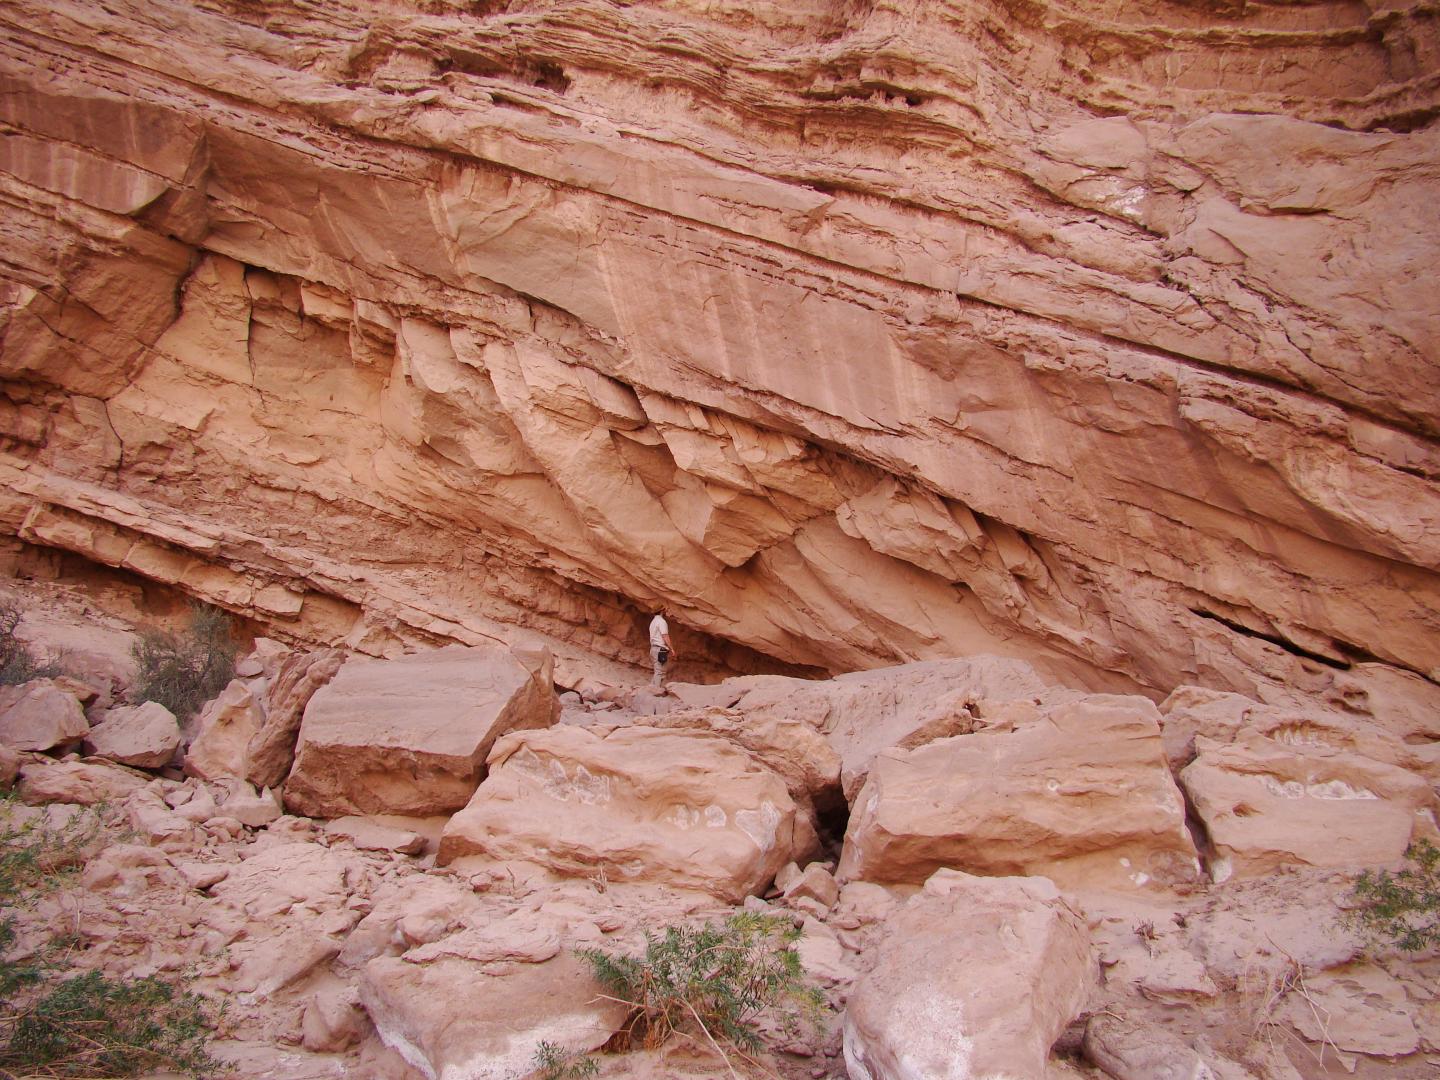 Sandstone of the Precordillera